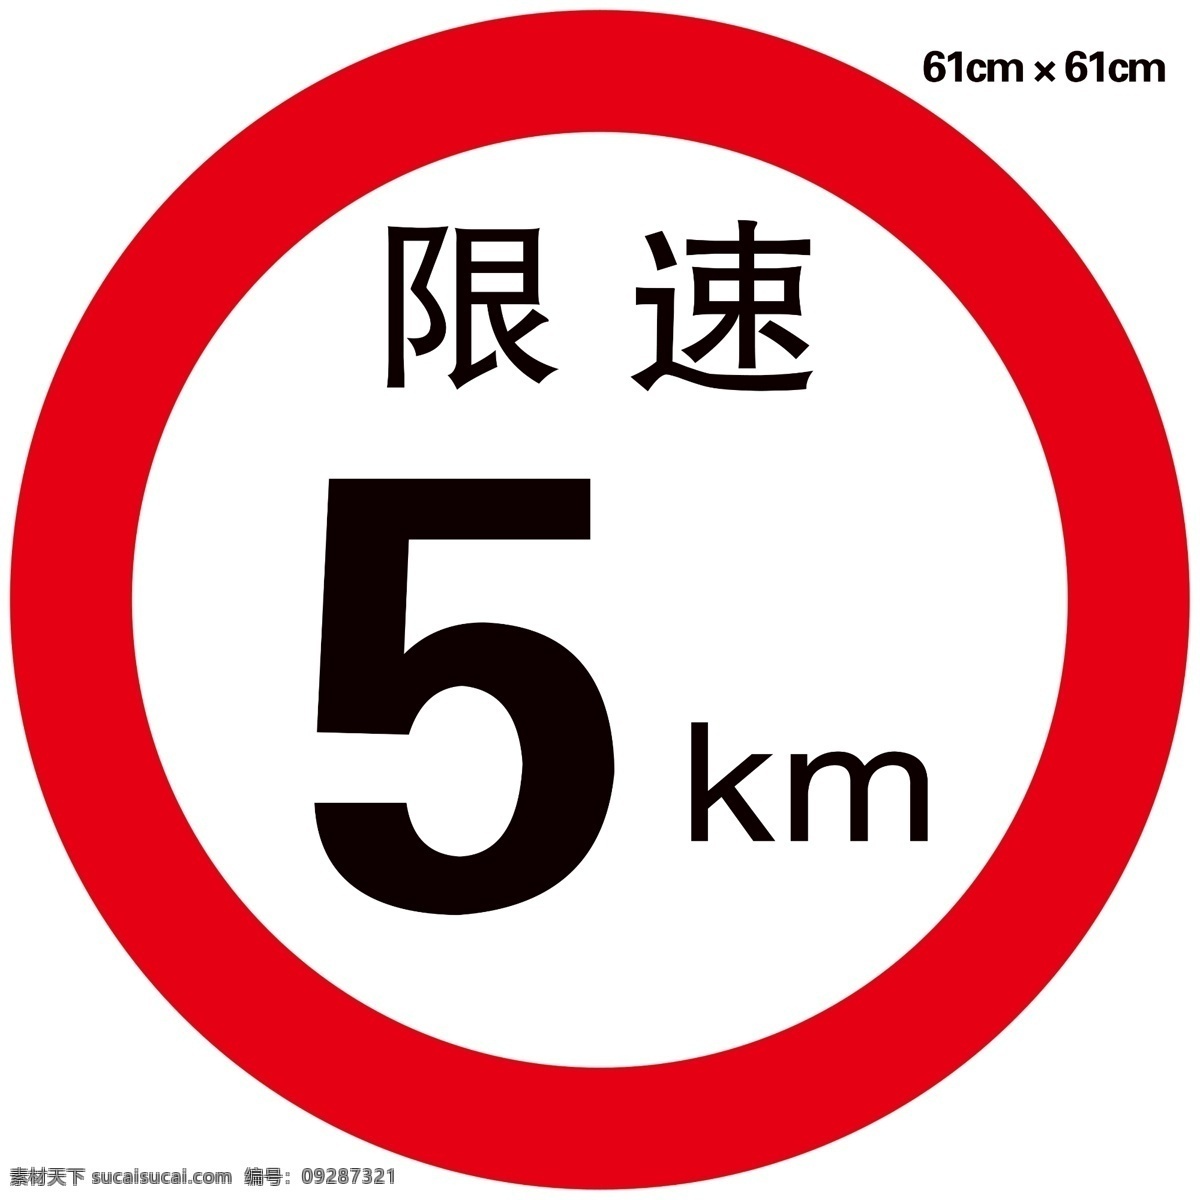 交通 标识 路牌 限速标志图片 限速标志 指示牌 国内广告设计